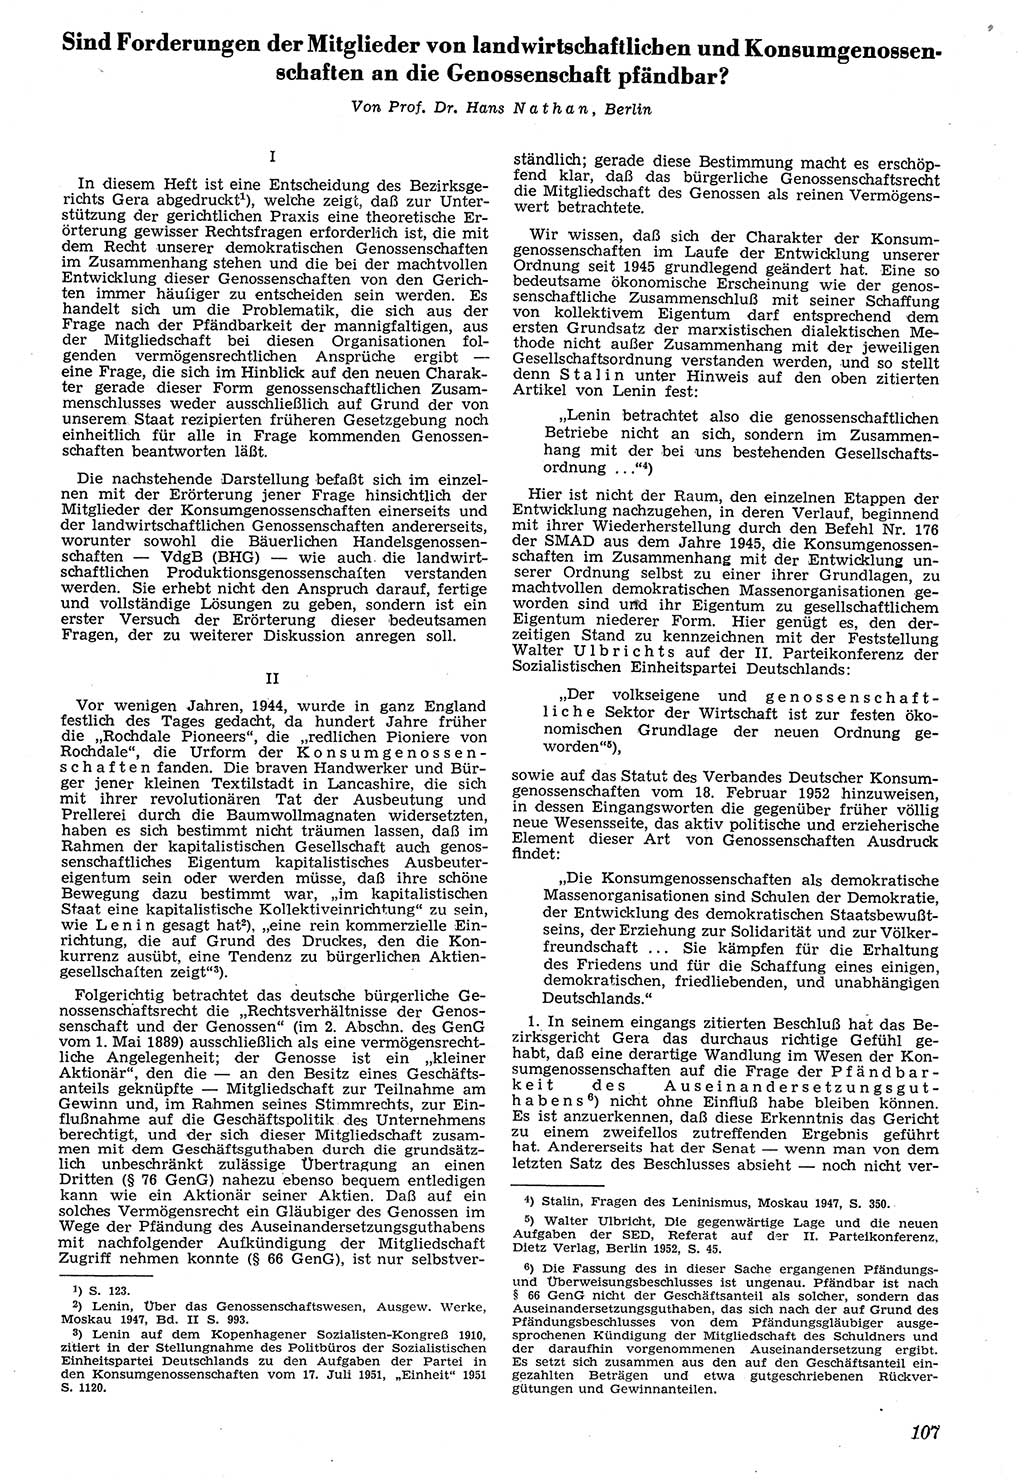 Neue Justiz (NJ), Zeitschrift für Recht und Rechtswissenschaft [Deutsche Demokratische Republik (DDR)], 7. Jahrgang 1953, Seite 107 (NJ DDR 1953, S. 107)